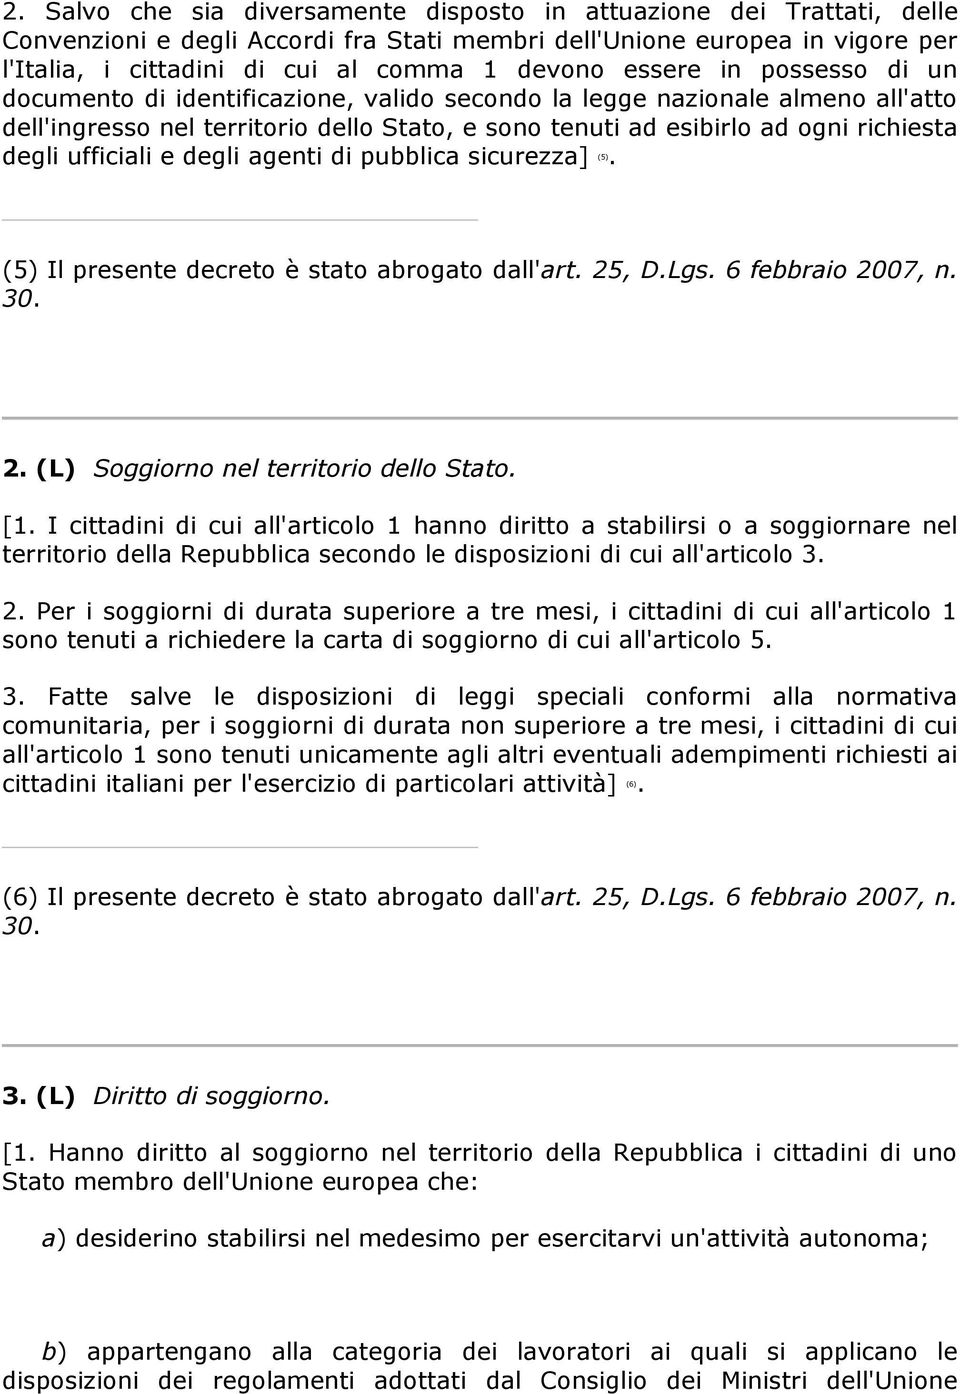 ufficiali e degli agenti di pubblica sicurezza] (5). (5) Il presente decreto è stato abrogato dall'art. 25, D.Lgs. 6 febbraio 2007, n. 30. 2. (L) Soggiorno nel territorio dello Stato. [1.